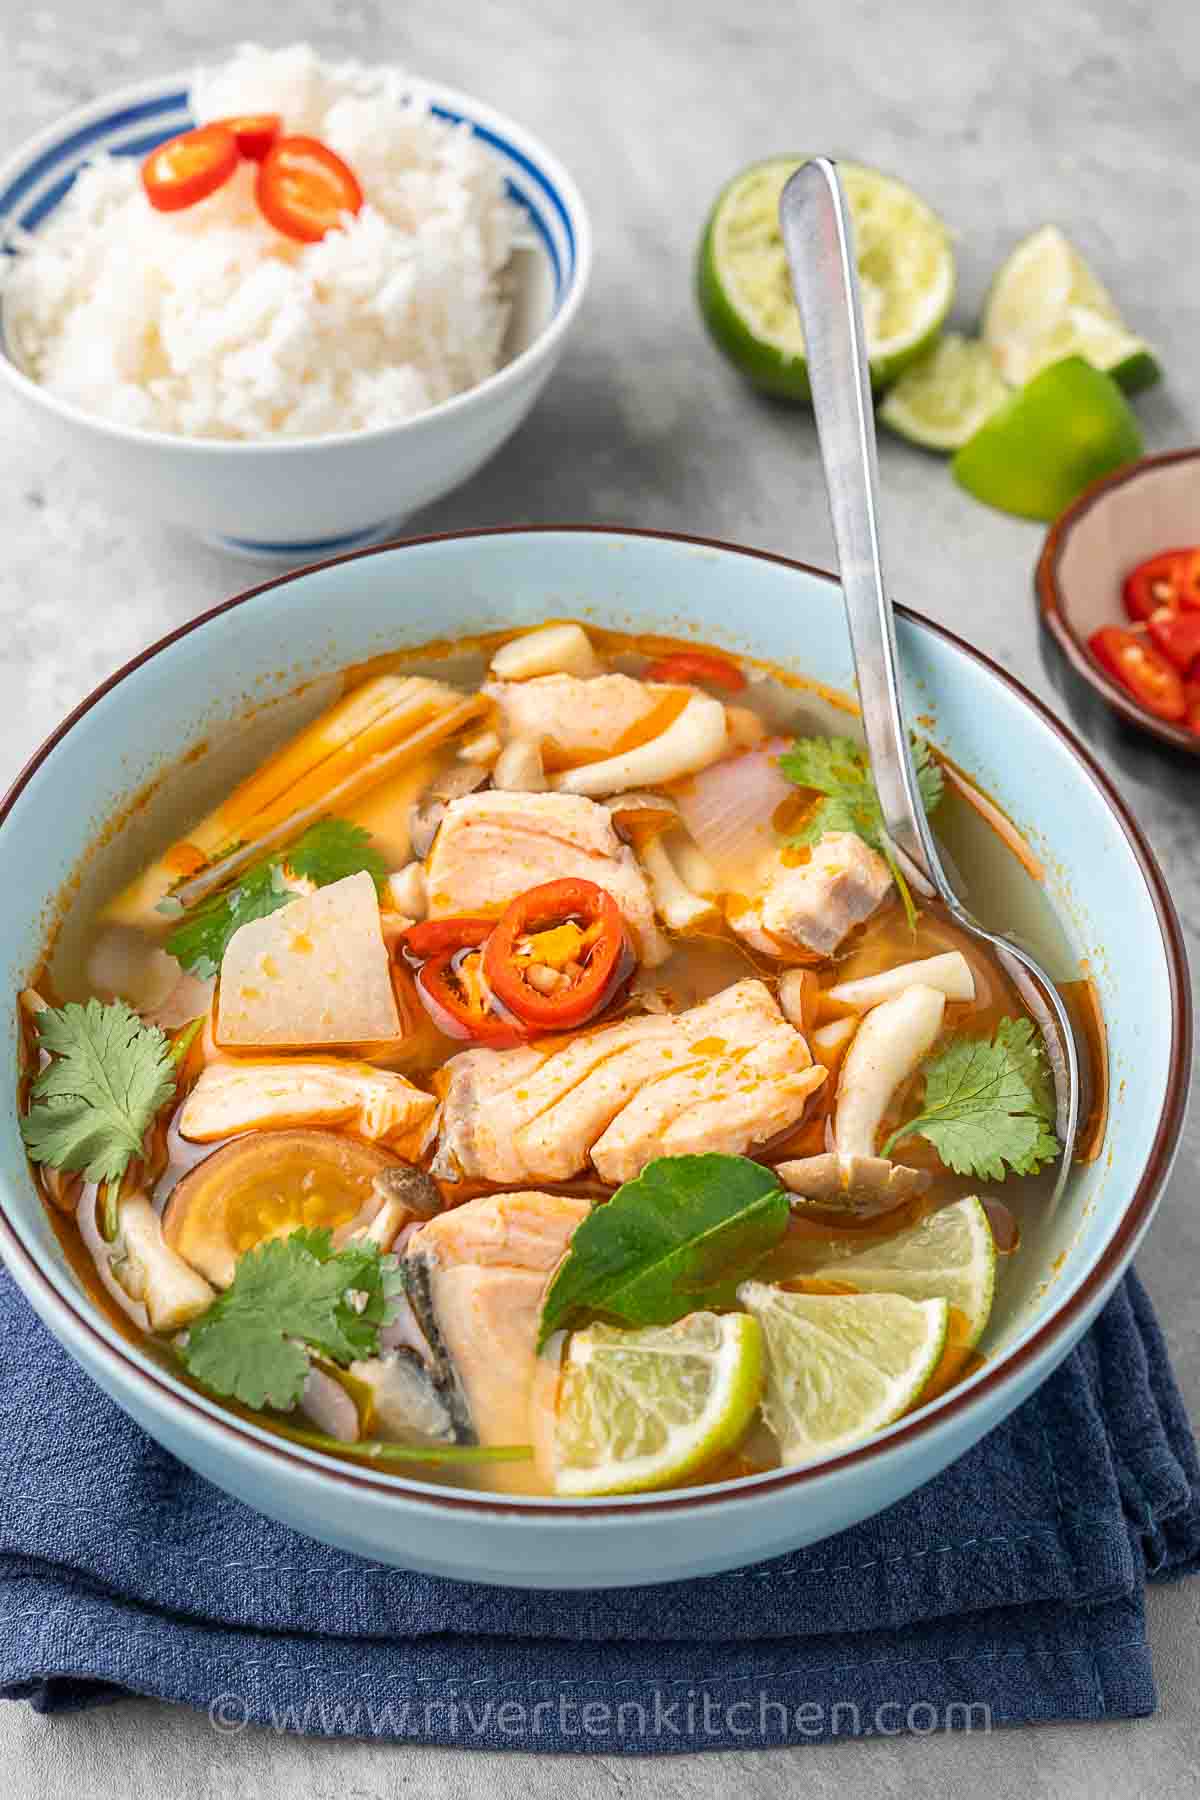 Thai Tom Yum soup made of fish.